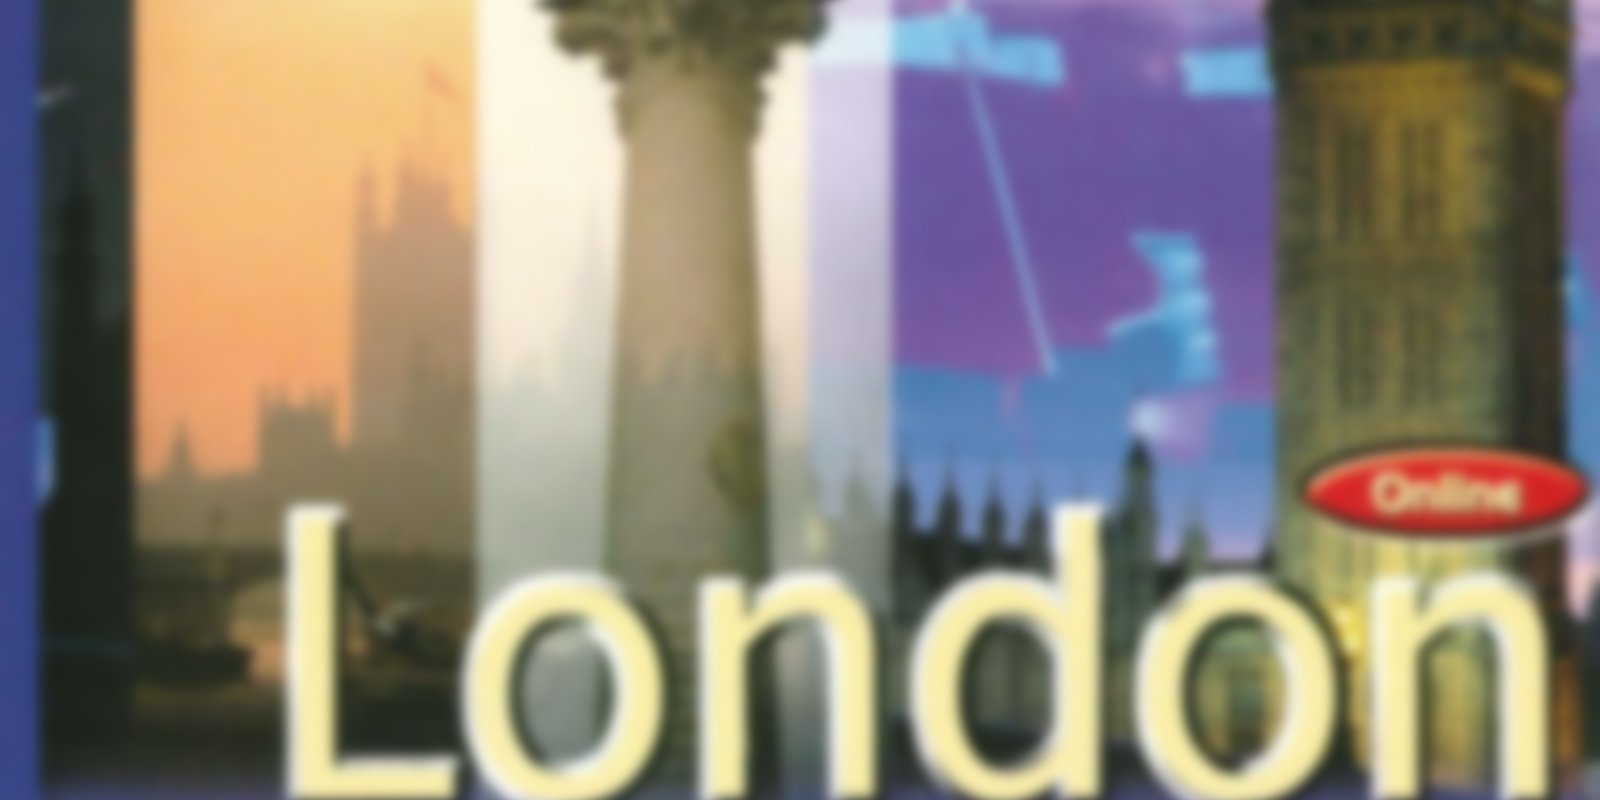 London - Der vernetzte Reiseführer